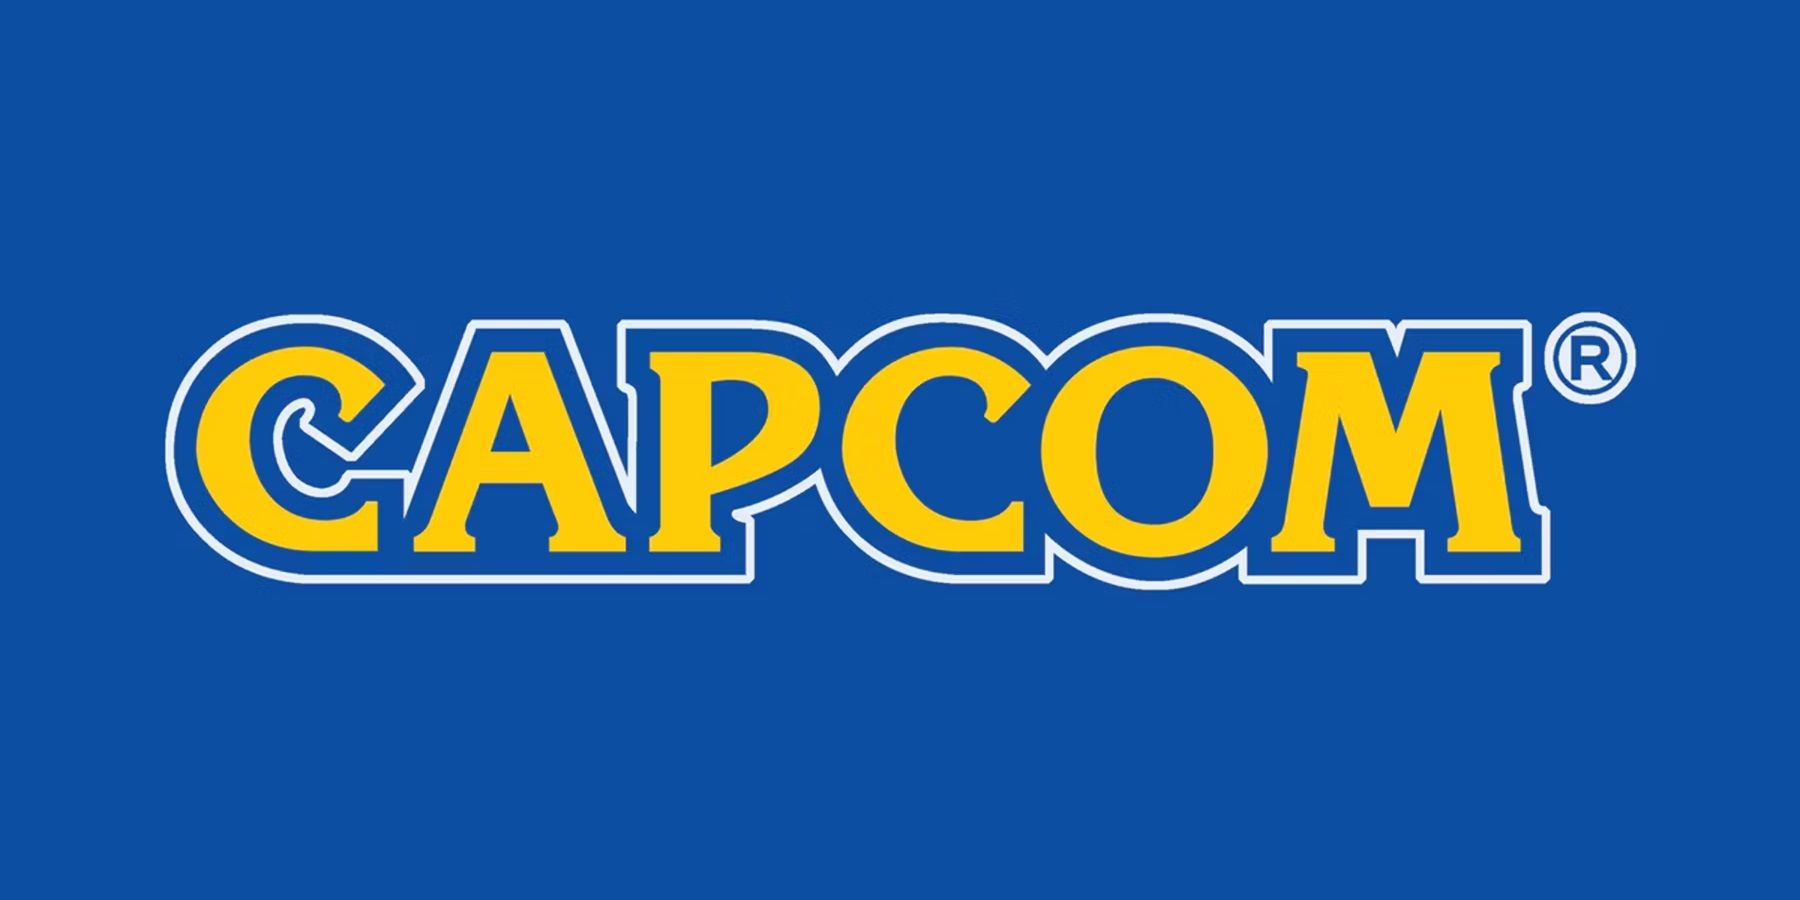 capcom logo with blue background